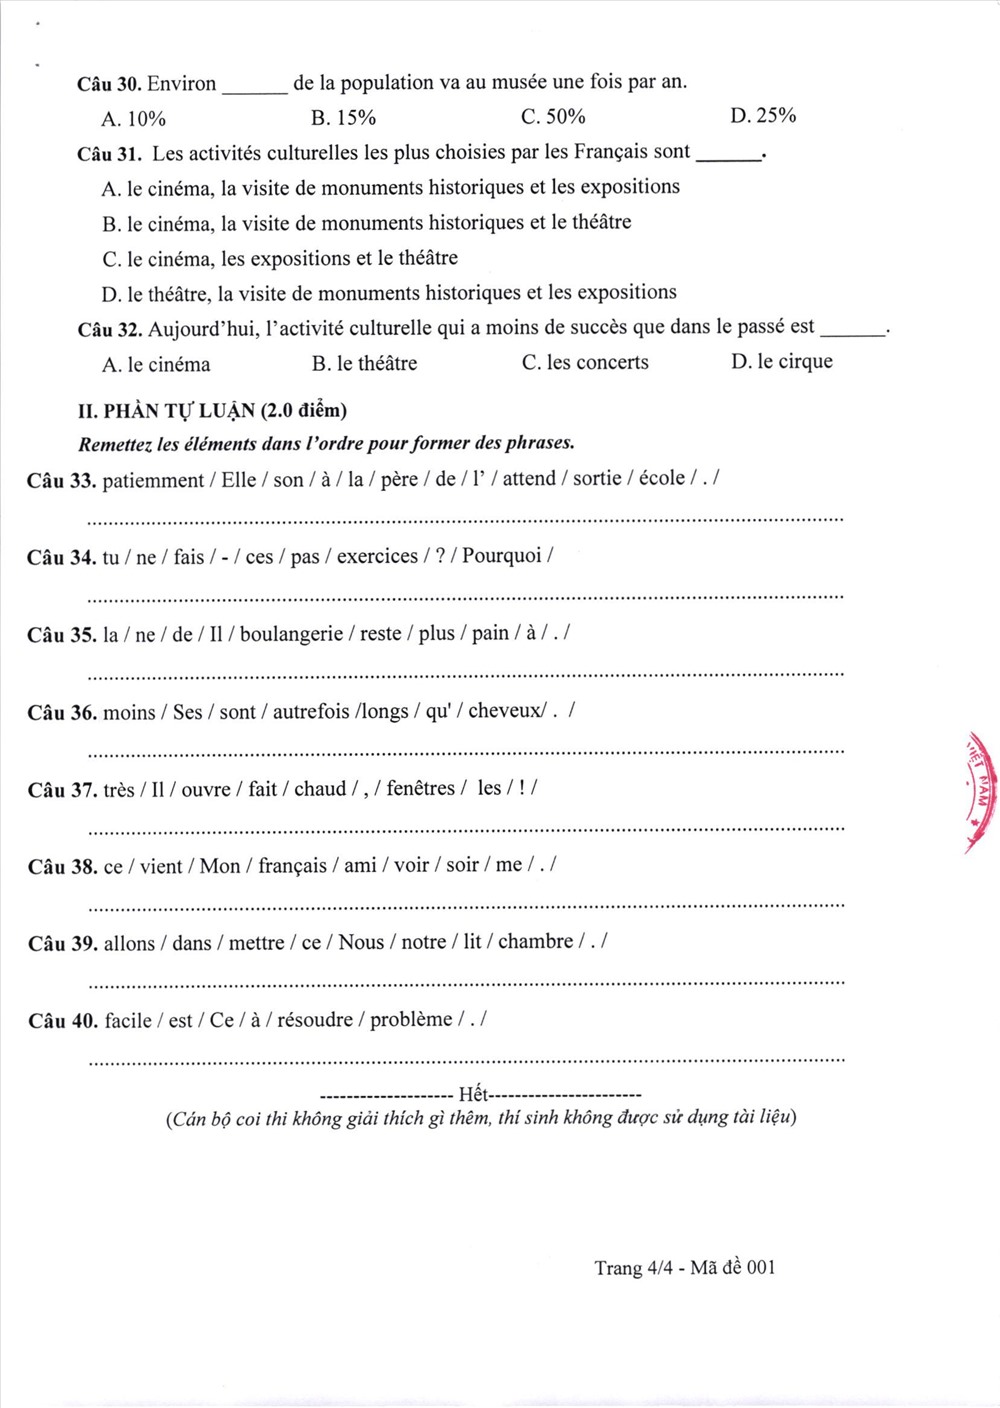 Đề thi chính thức môn Tiếng Pháp vào lớp 10 Hà Nội.